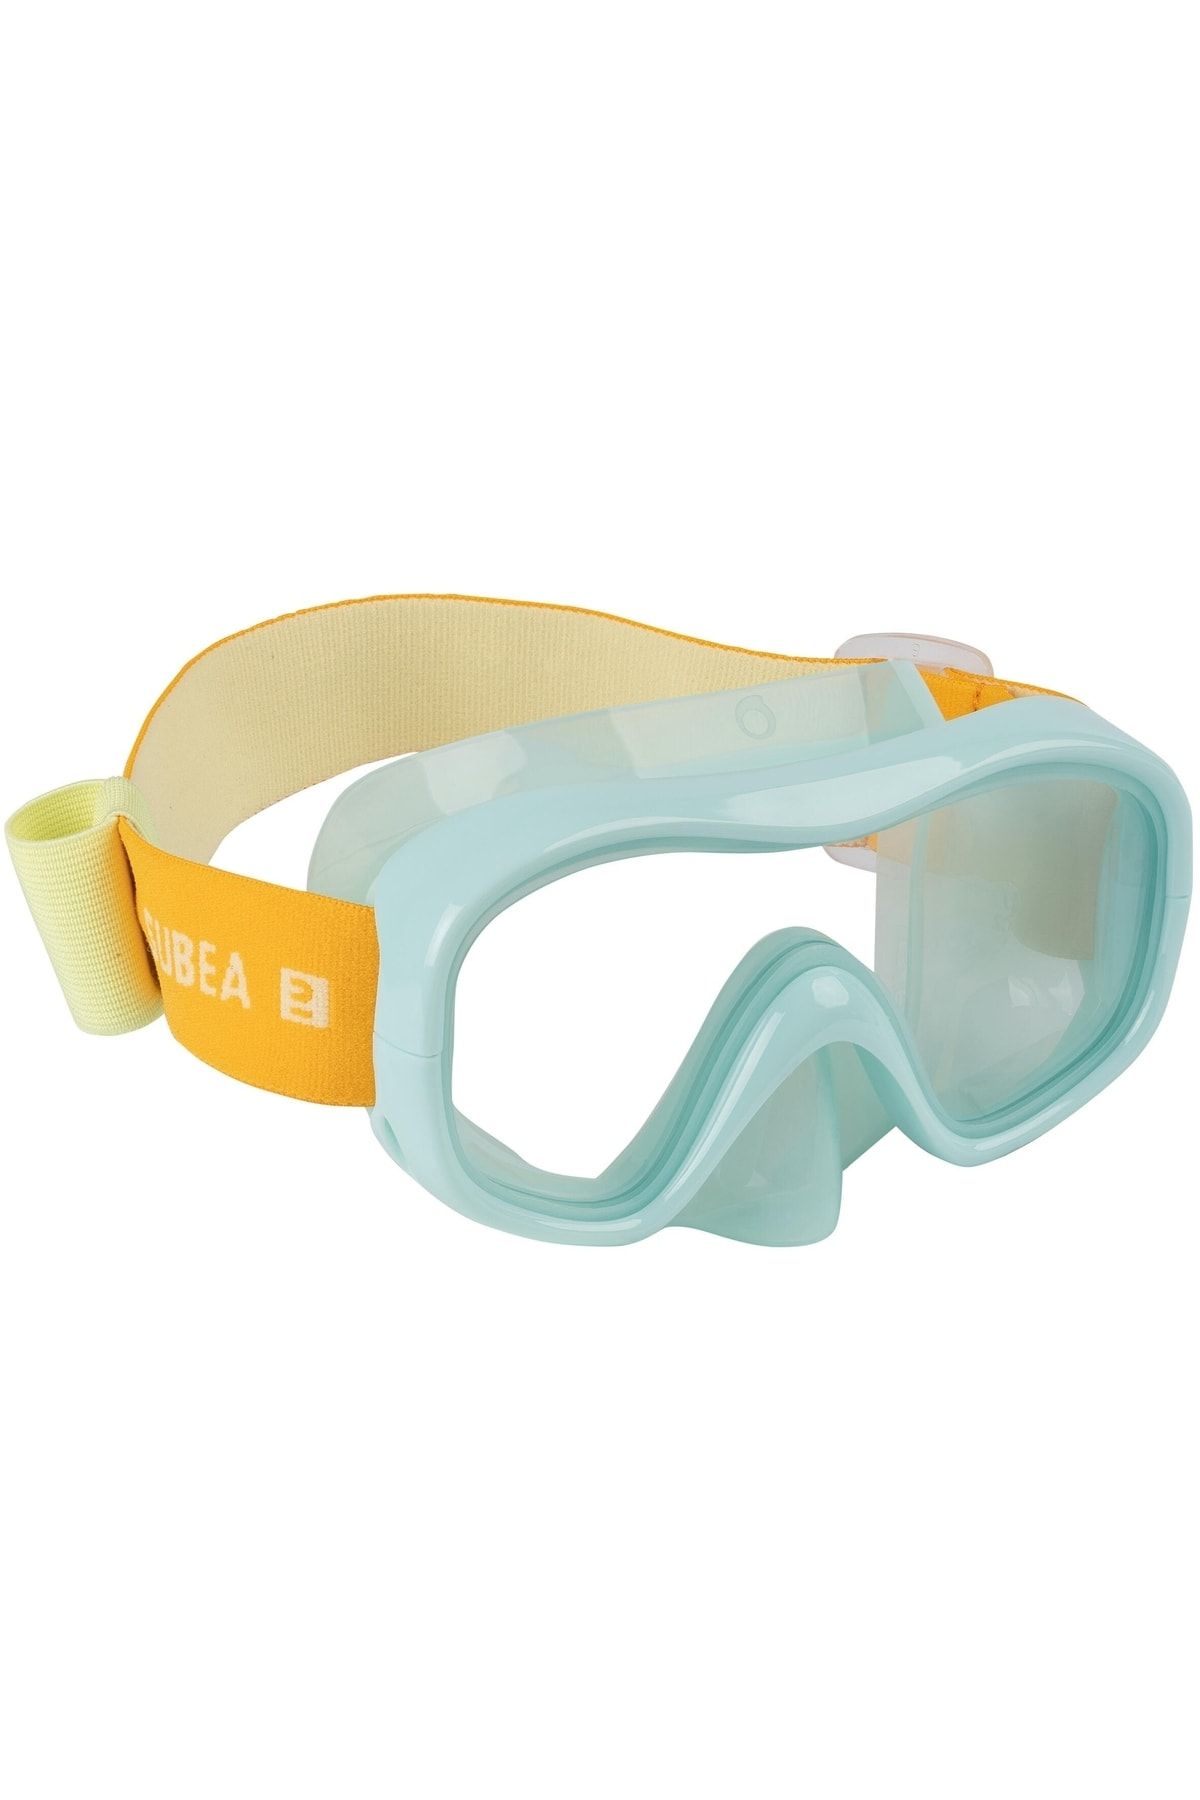 Decathlon Çocuk Maskesi Şnorkelle Kırılmaz Polikarbonat Cam Rahat Ve Dayanıklı